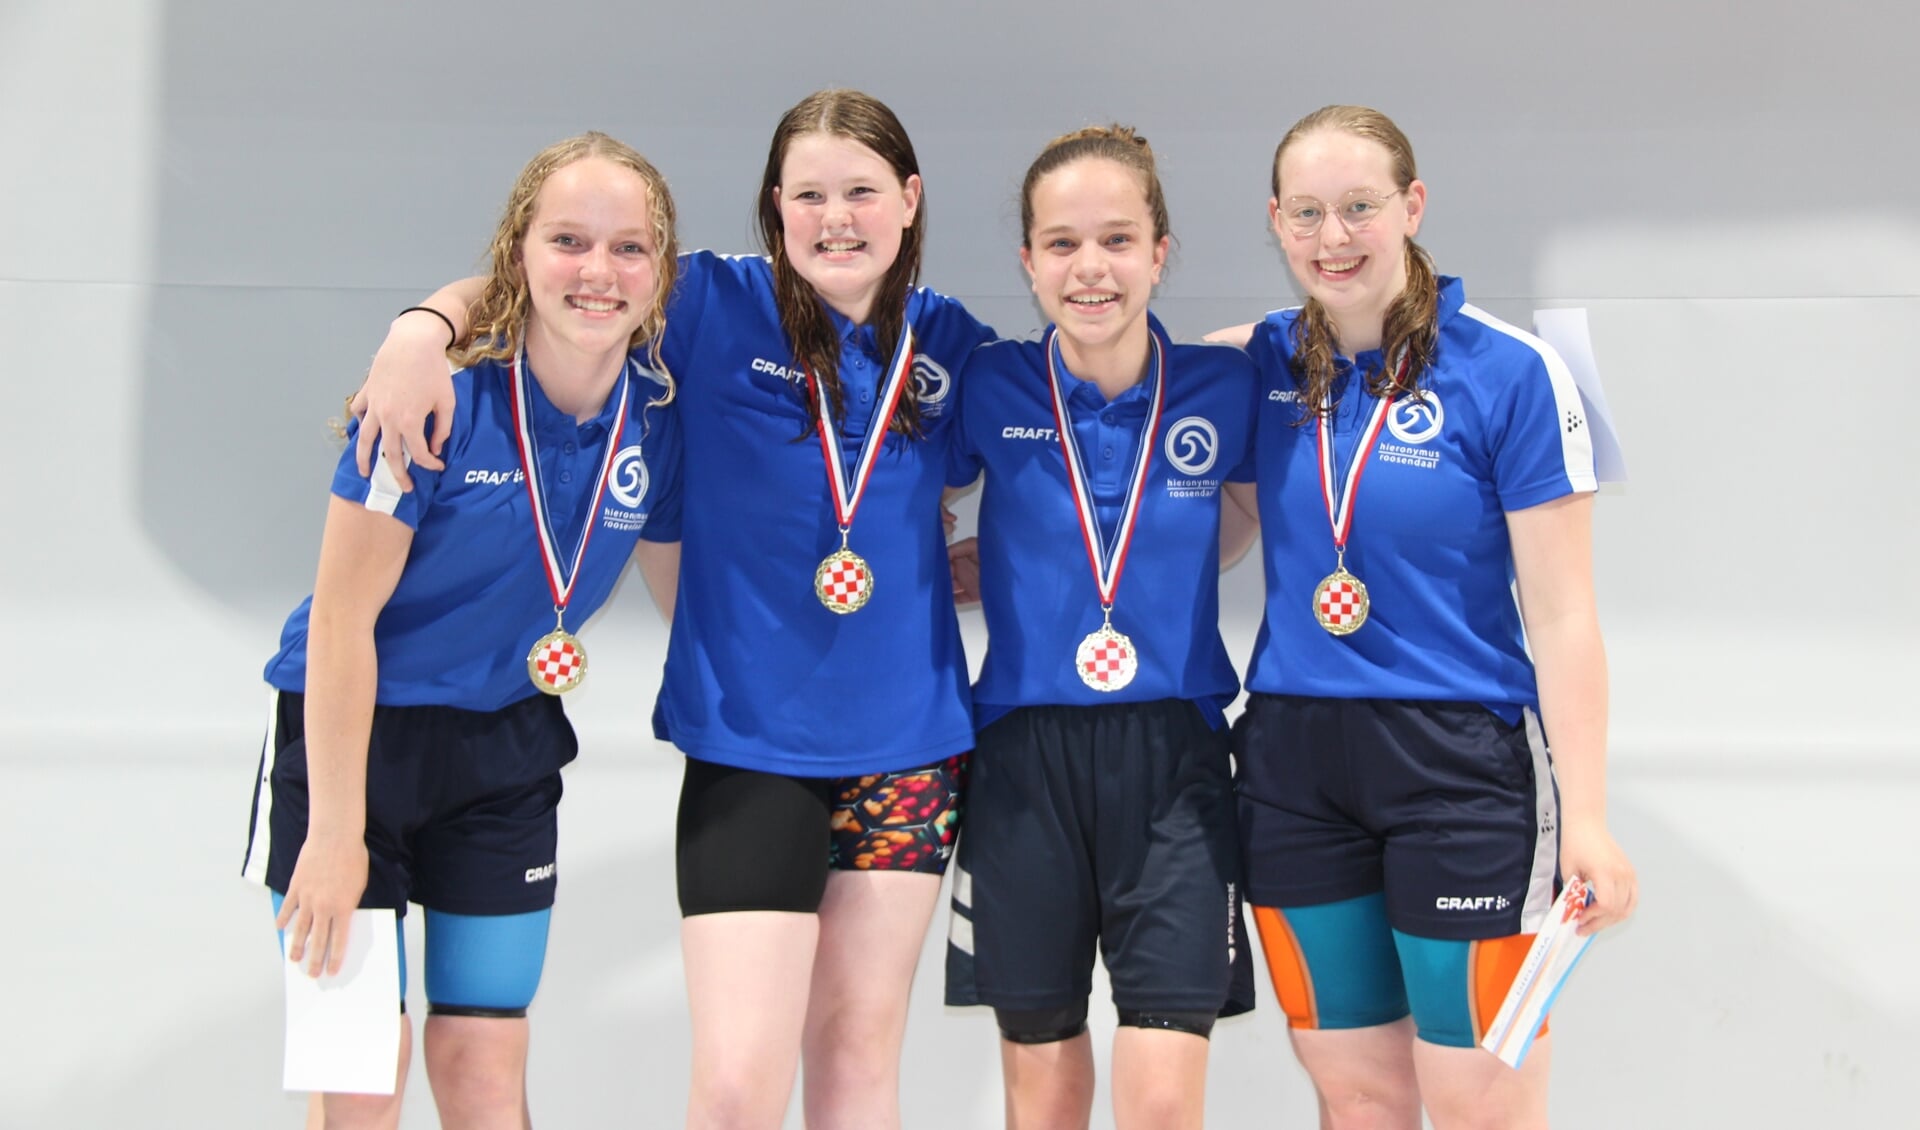 Karlijn van der Schrier, Rona Goverde, Indy Verhoeven (uit Oudenbosch) en Shanna Joppe wonnen de gouden medaille op de 4x100 meter wisselslag bij de jeugd.